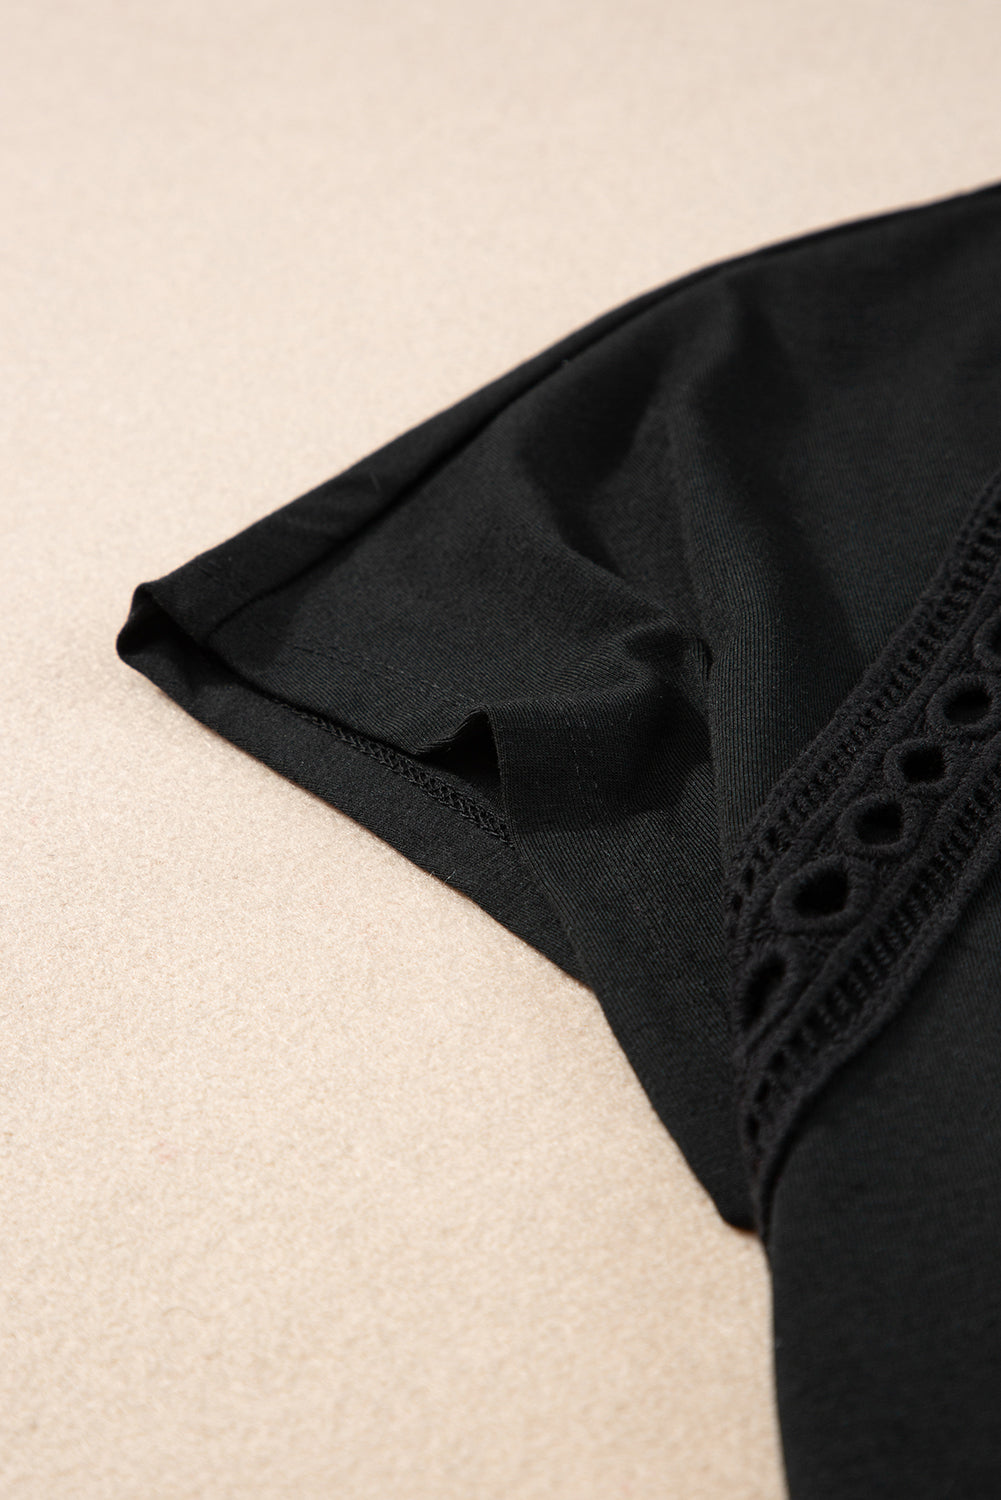 T-shirt surdimensionné noir avec détails en dentelle au crochet